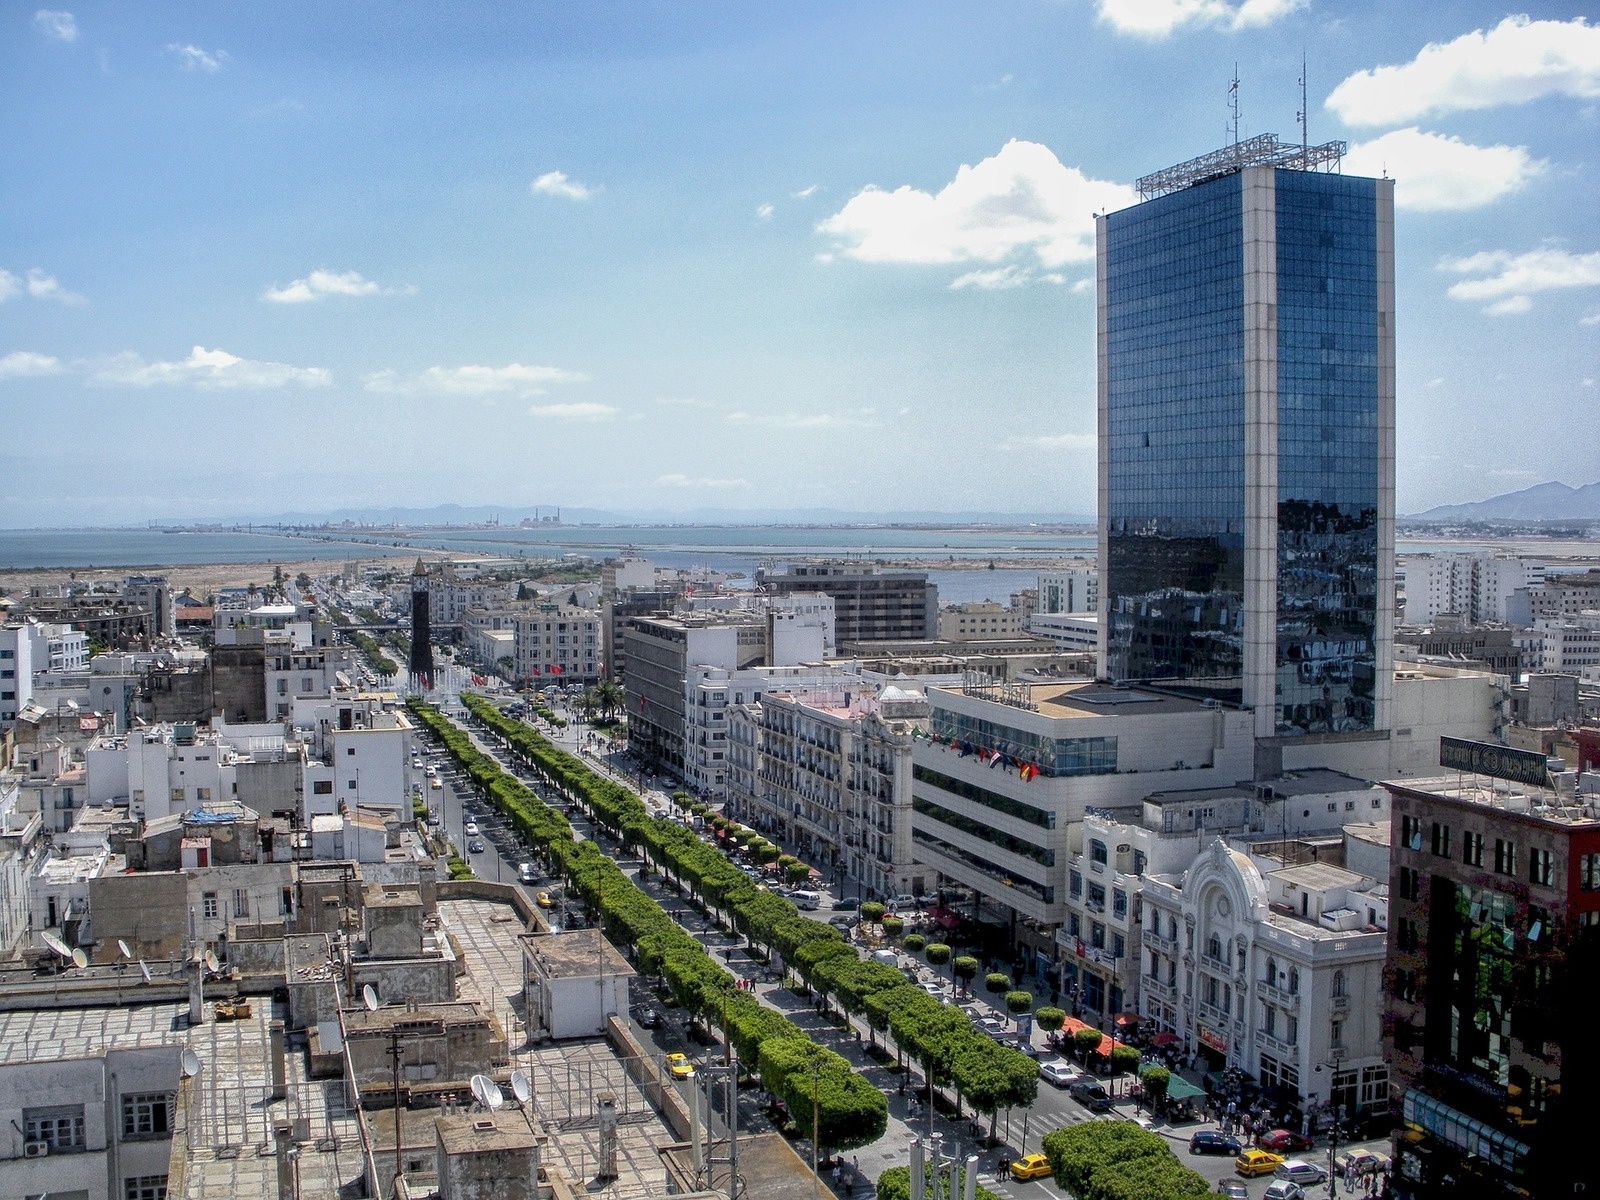 paesaggio urbano in tunisia